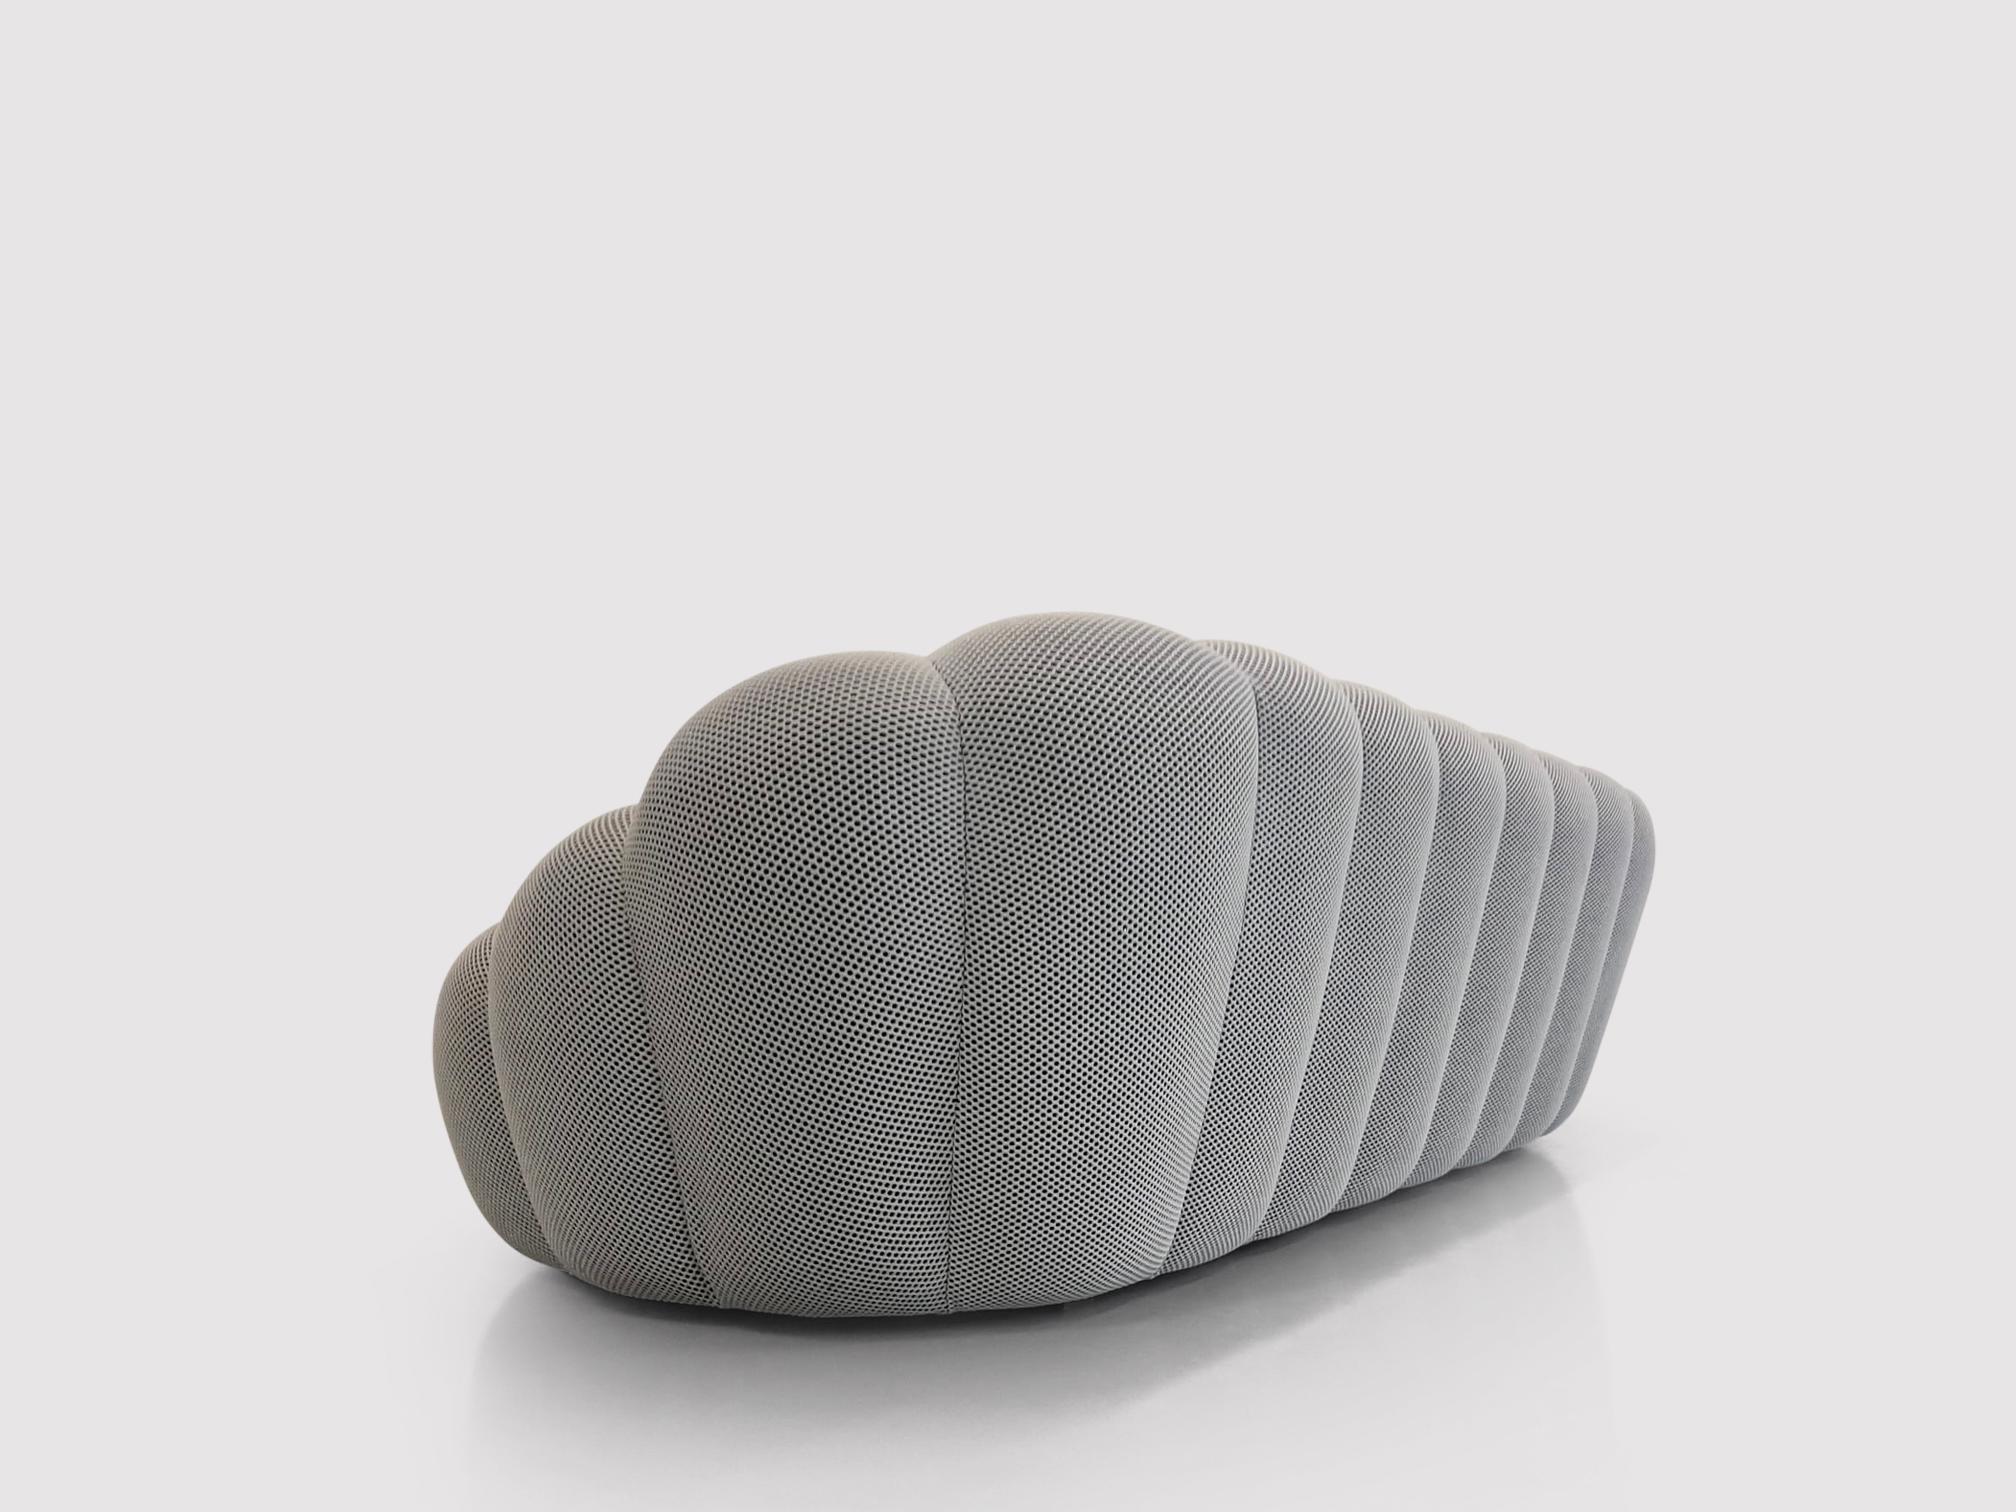 Spectaculaire design contemporain de Sacha Lakic pour Roche Bobois ; la série Bubble a été conçue en 2014 et est devenue un succès immédiat. Le designer s'est inspiré des nuages gonflés et des formes naturelles avant de concevoir le canapé. Le